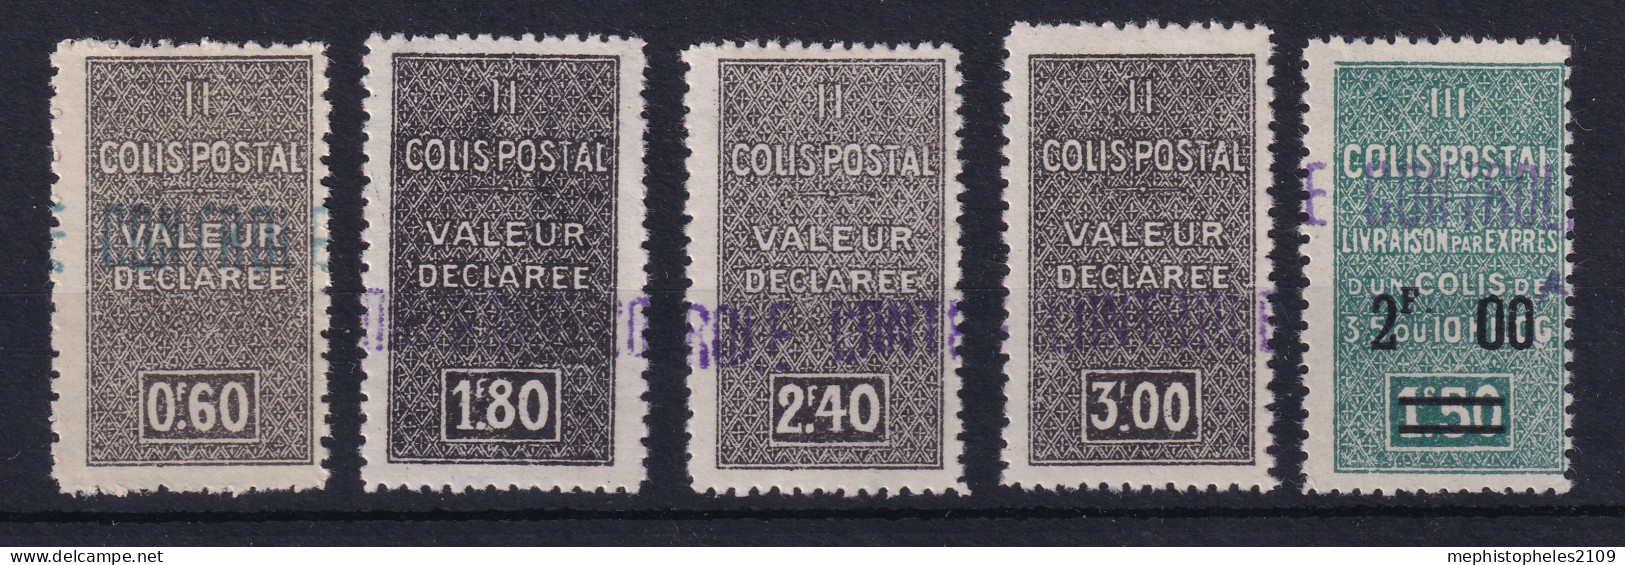 ALGÉRIE 1939 - MLH - YT 55, 56, 57, 58, 59 - COLIS POSTAUX - Postpaketten